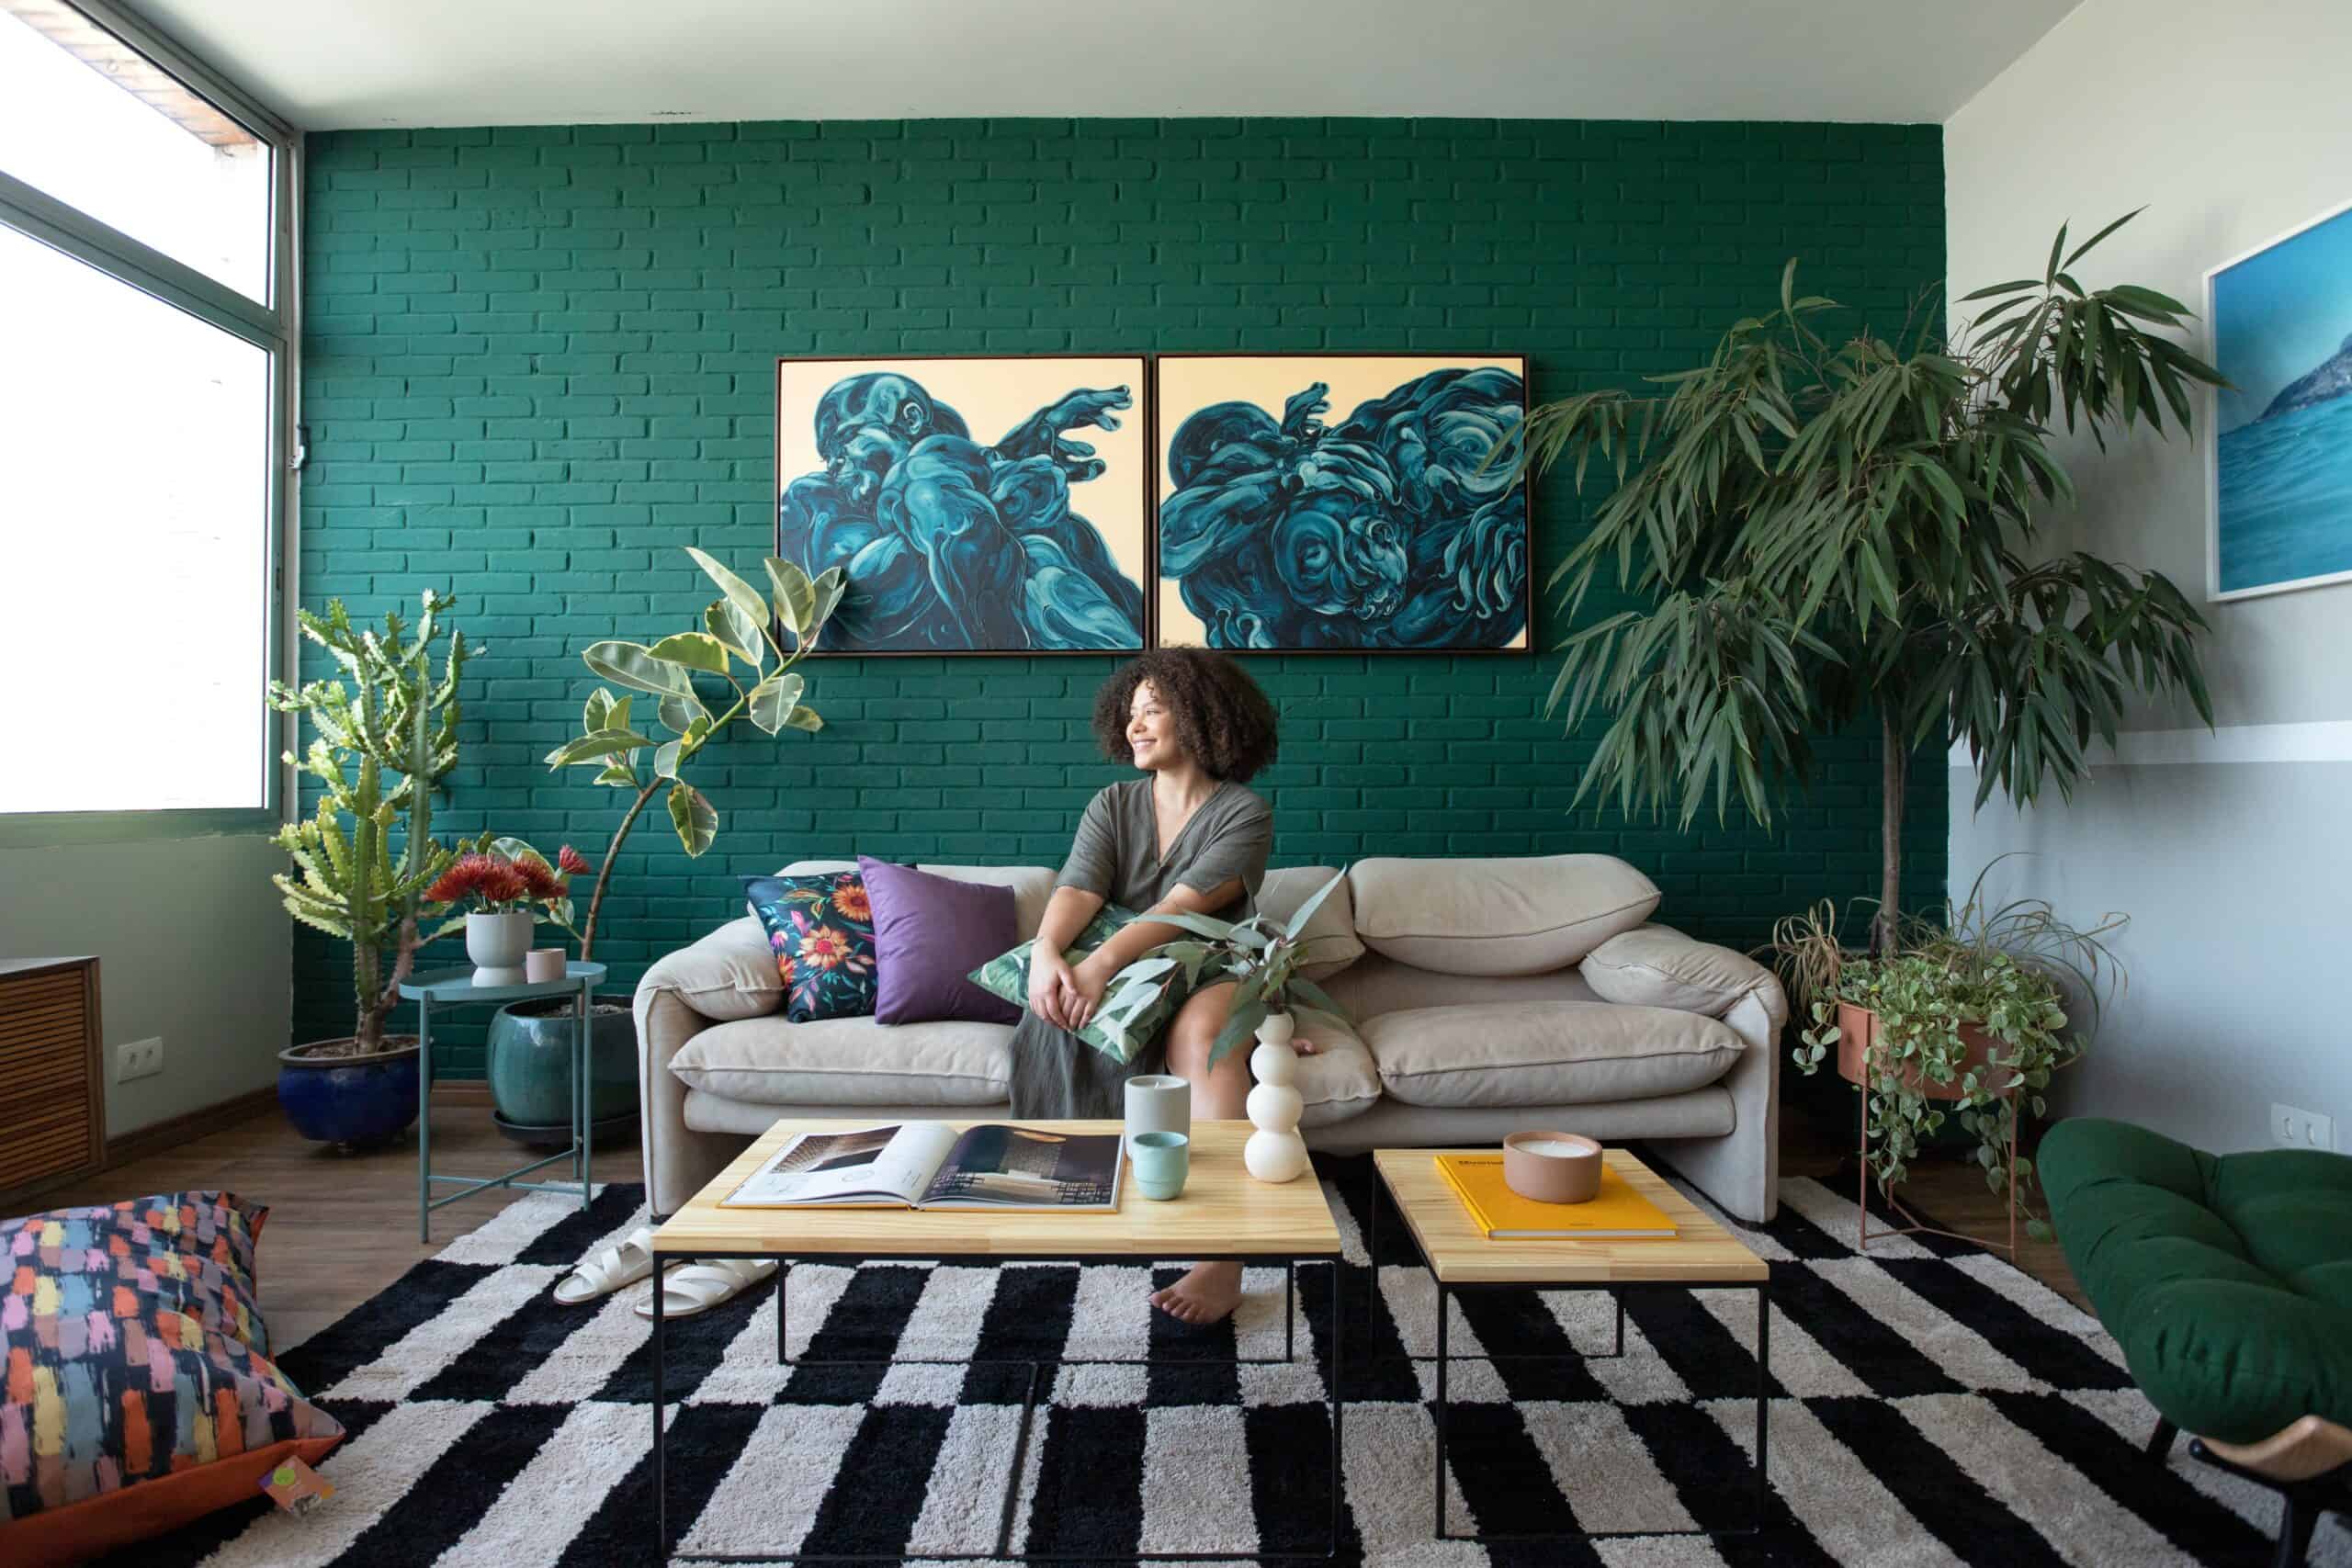 modelo sentada em uma sala repleta de plantas, no espaço tem tapete, sofá, mesa de centro e quadros